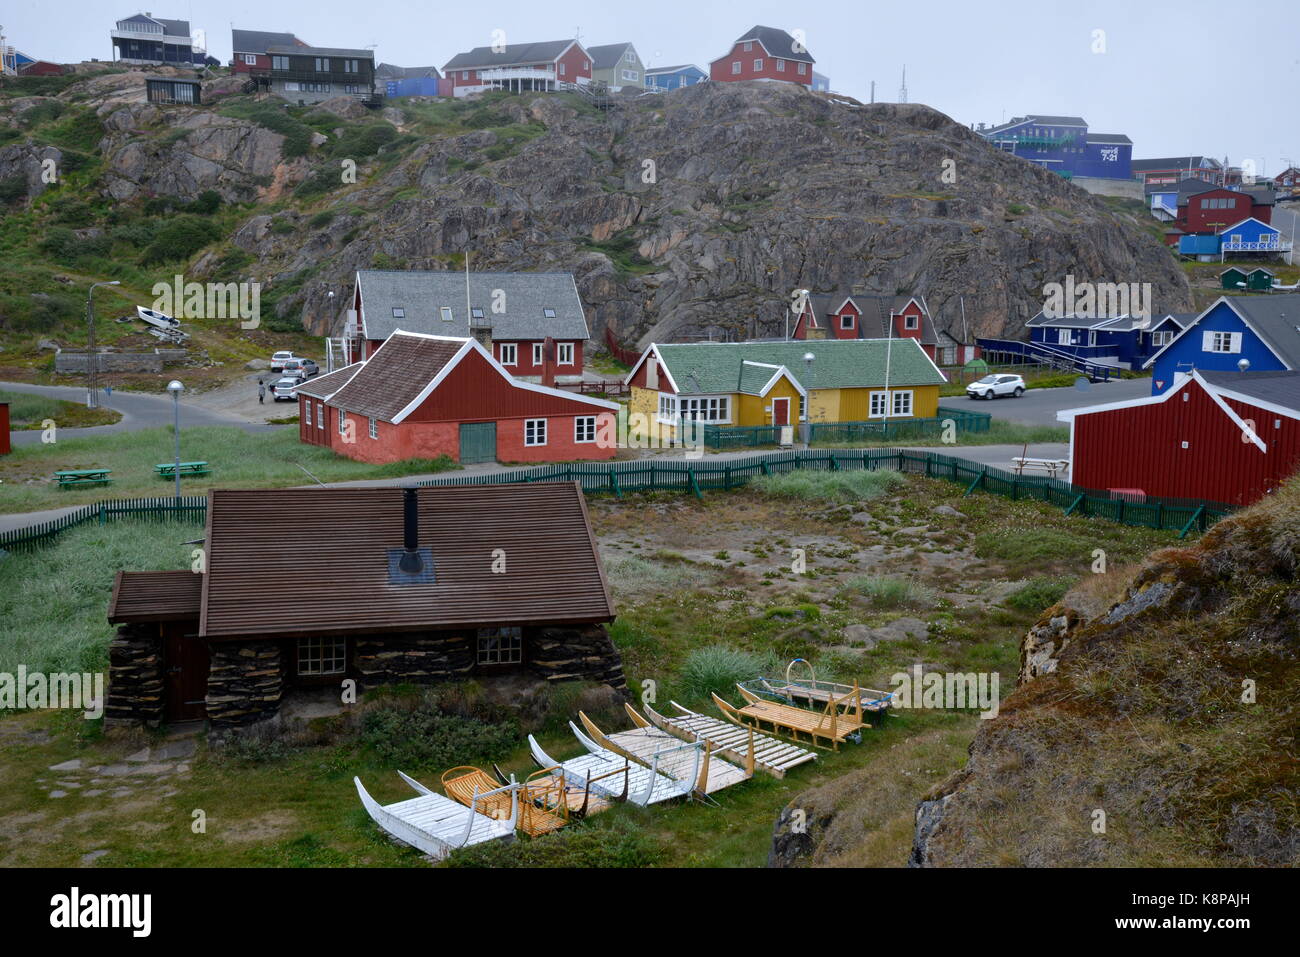 La ville de sisimiut, sur la côte ouest du Groenland. c'est le deuxième plus grand du pays, située dans un paysage montagneux, à 75 kilomètres au nord du cercle polaire. photo : karlheinz schindler/dpa-zentralbild/zb | conditions dans le monde entier Banque D'Images